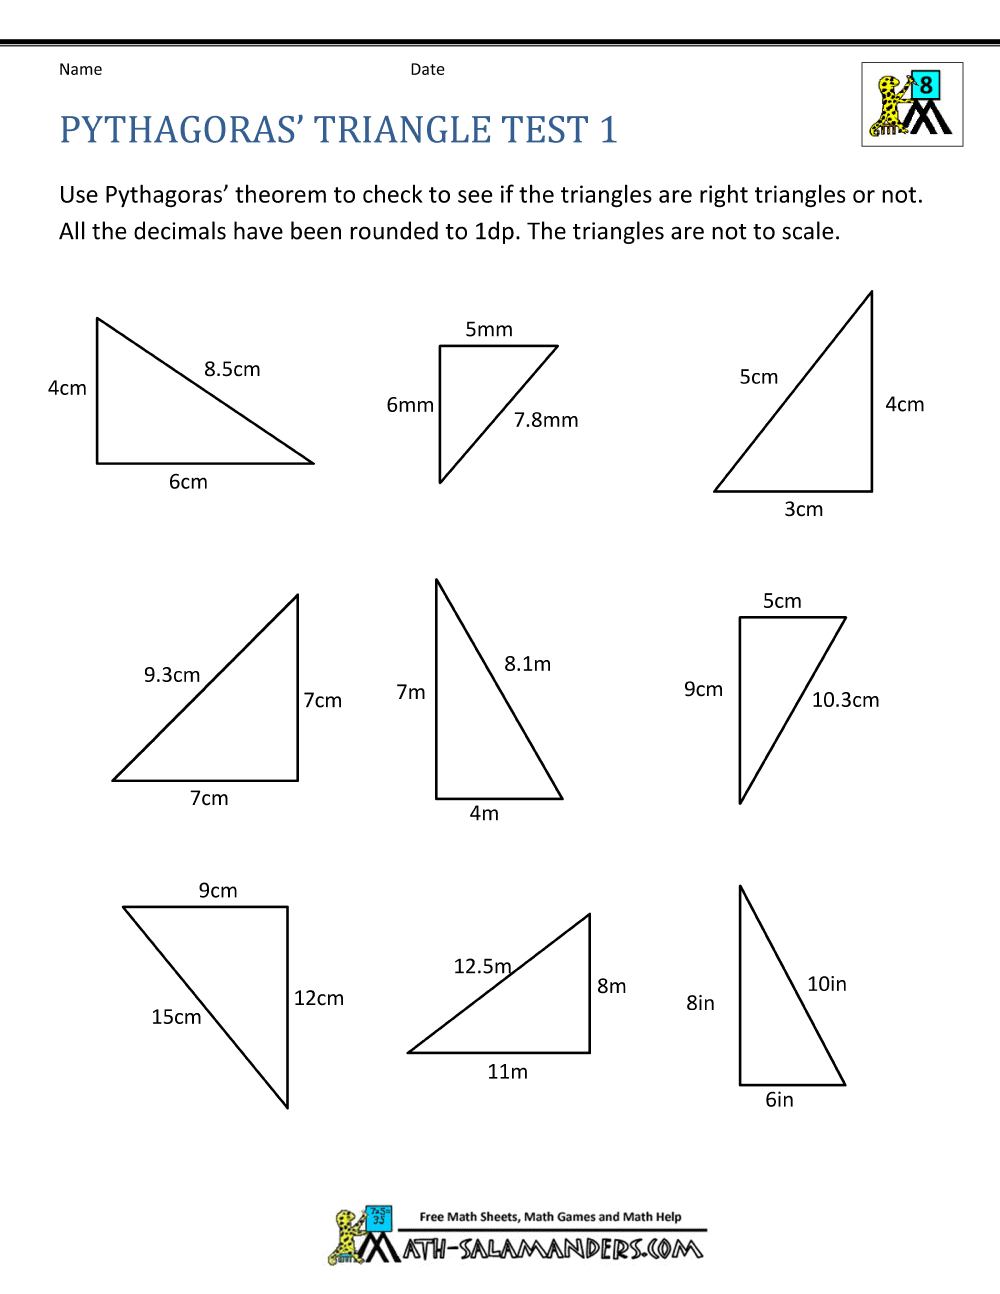 Pythagoras Theorem Questions